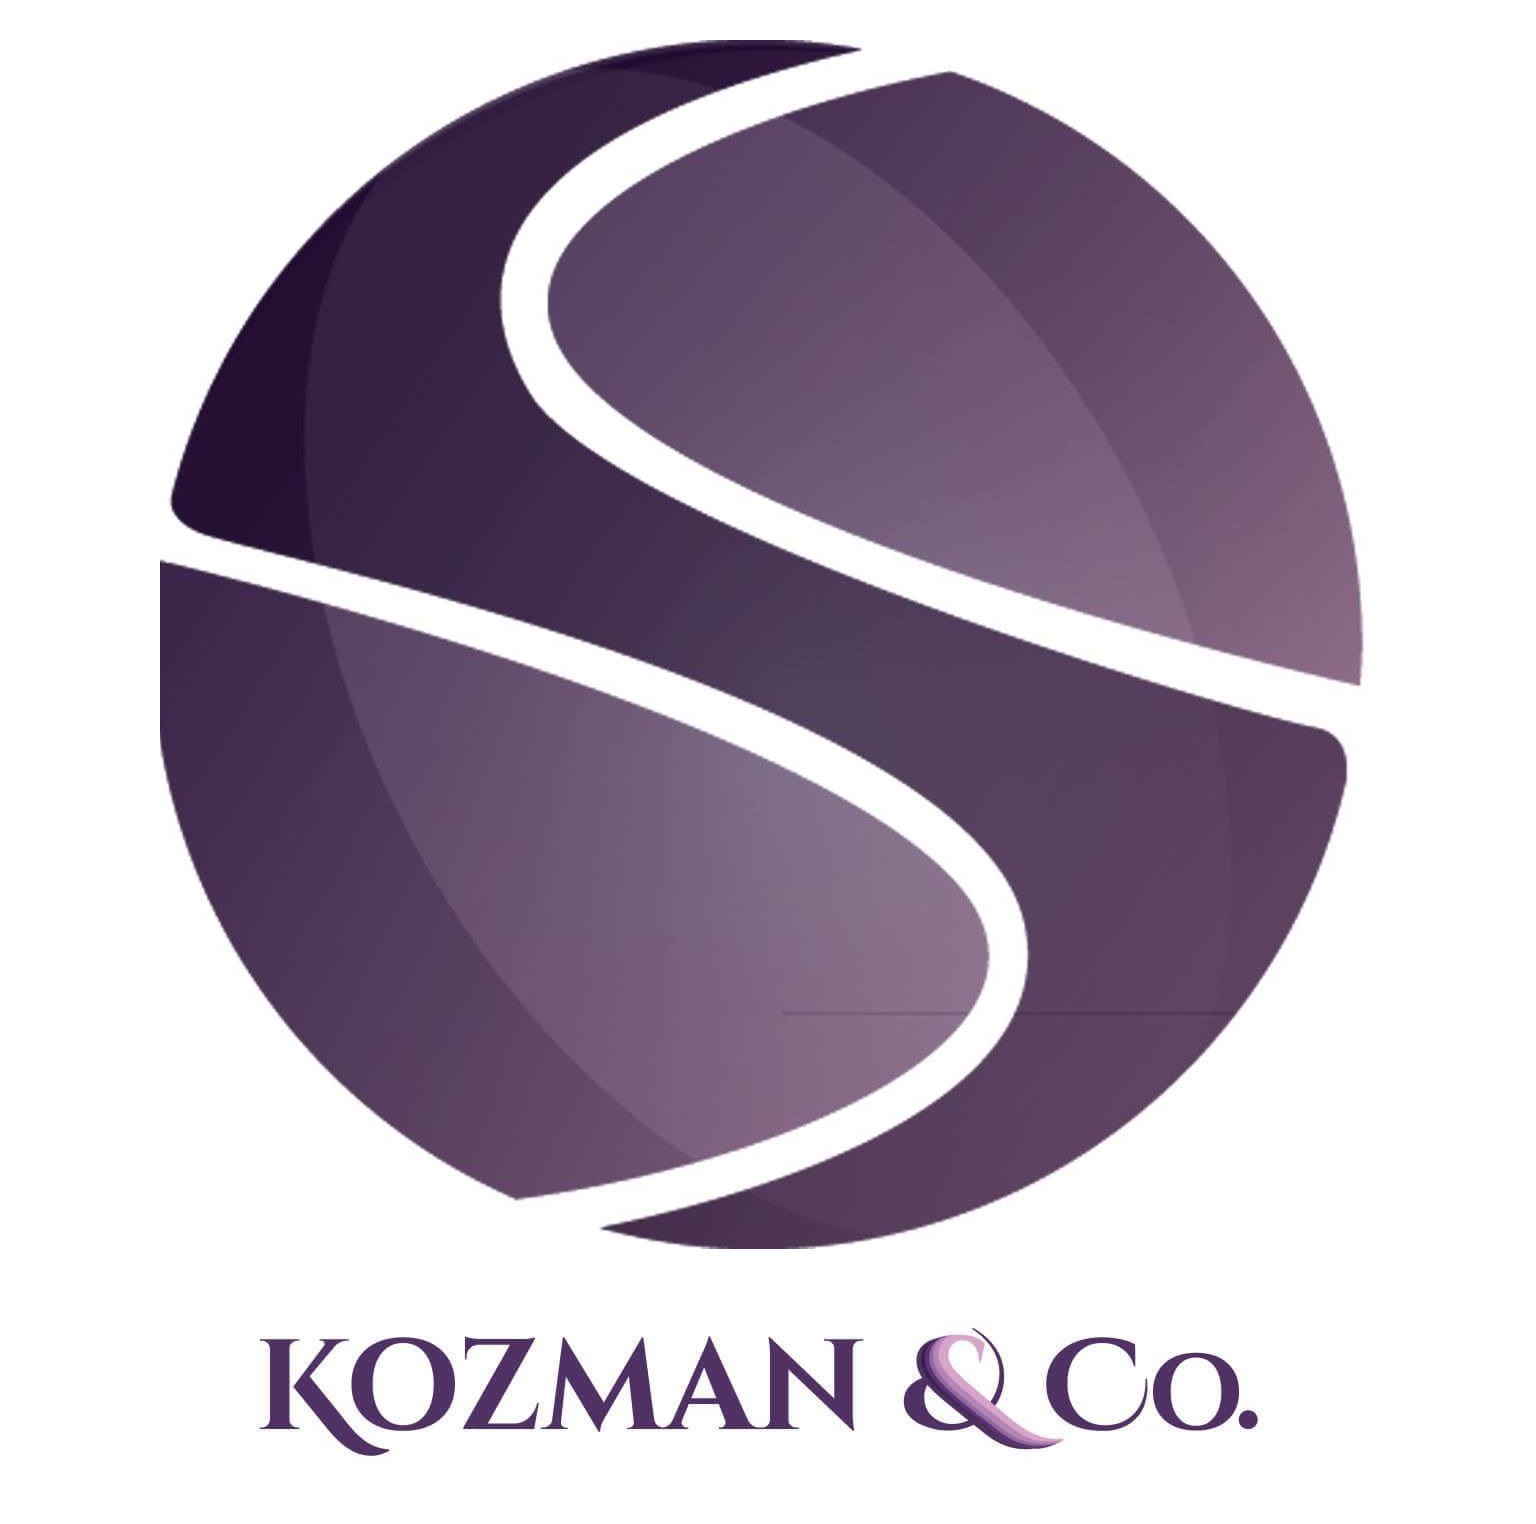 Kozman & Co.